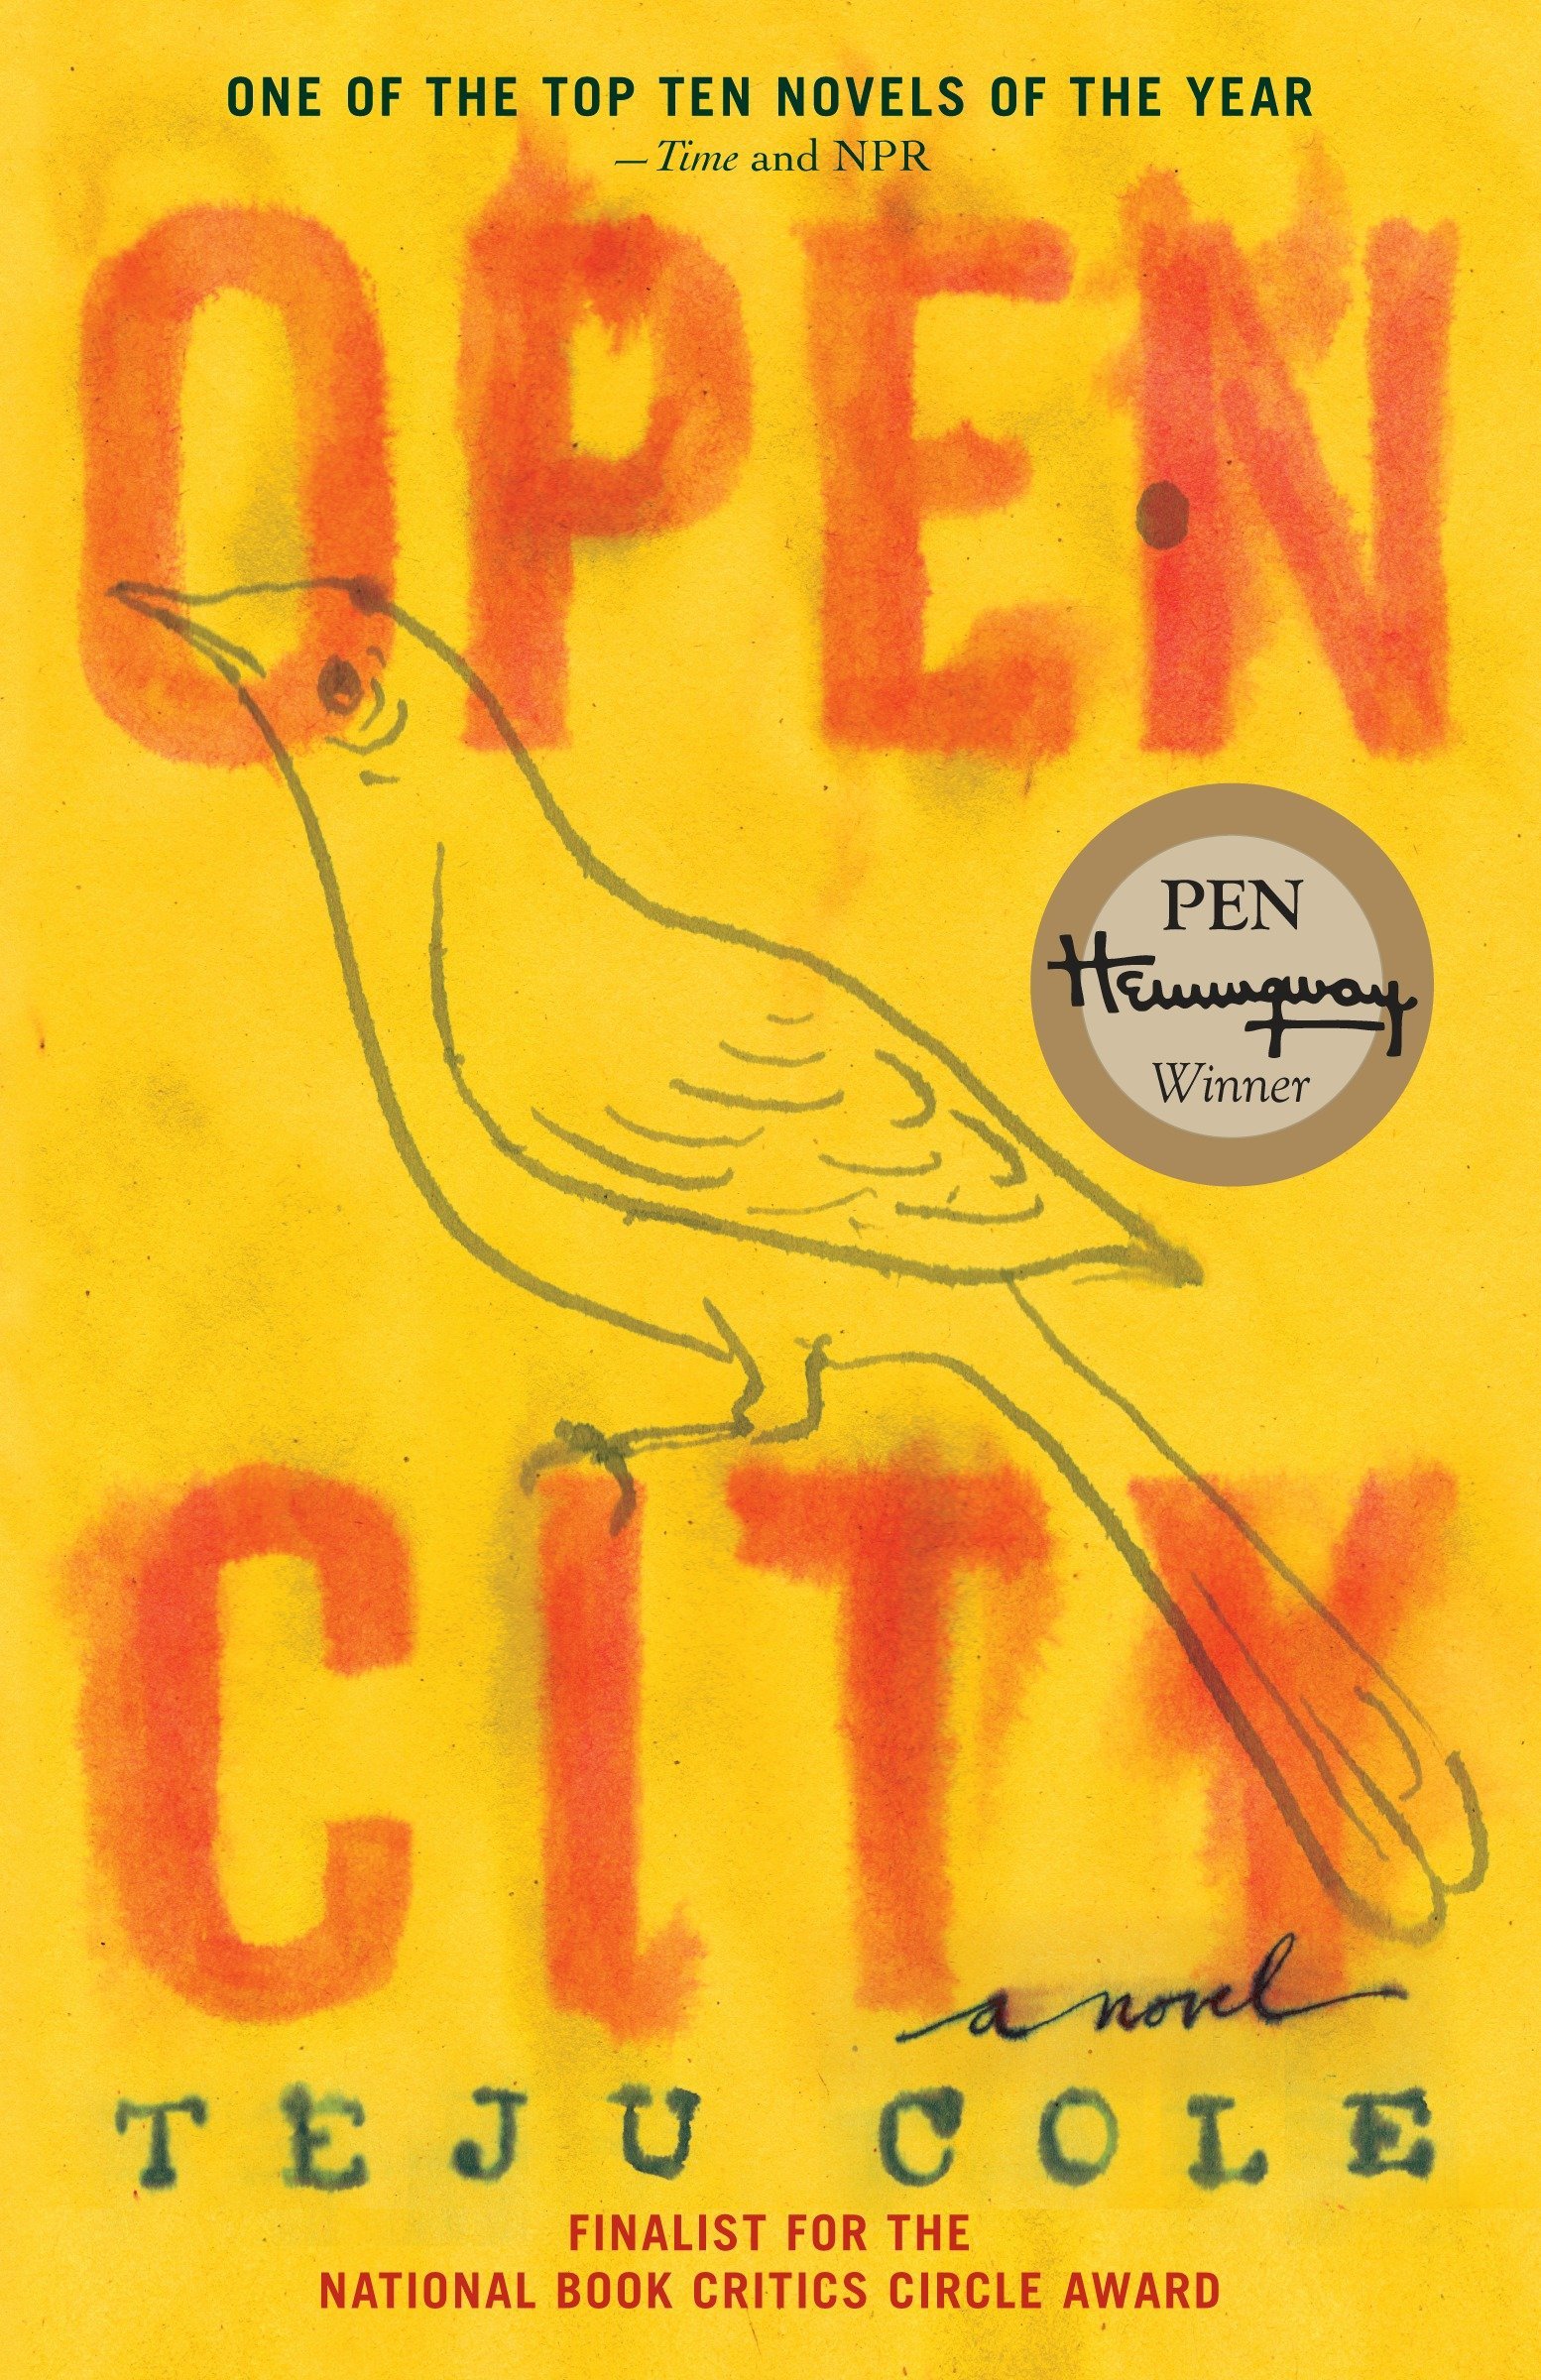 Open City, Teju Cole